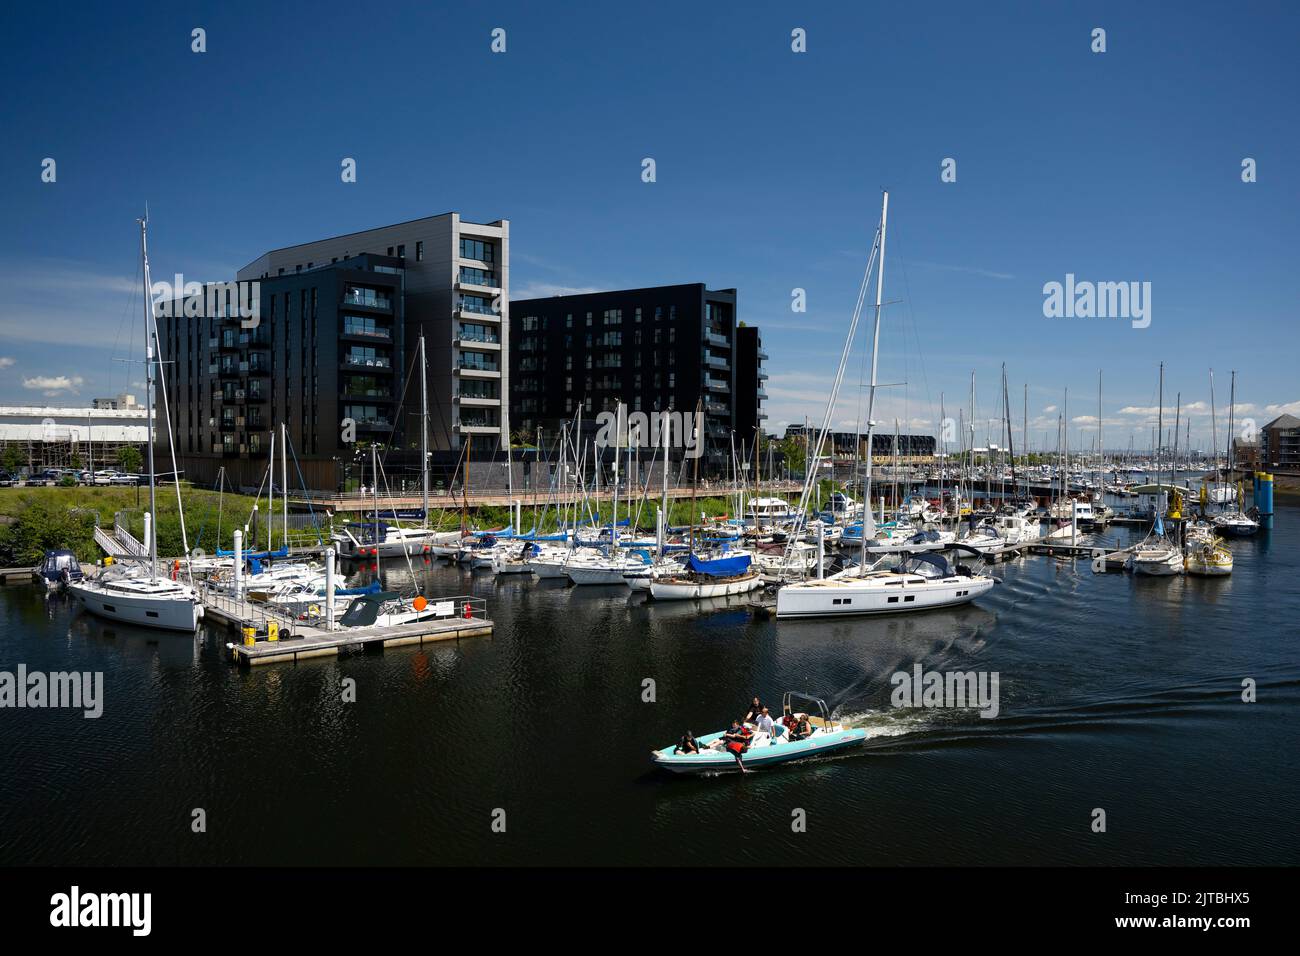 Vue générale des appartements Bayscape au large de la rivière Ely à Penarth, pays de Galles, Royaume-Uni. Banque D'Images